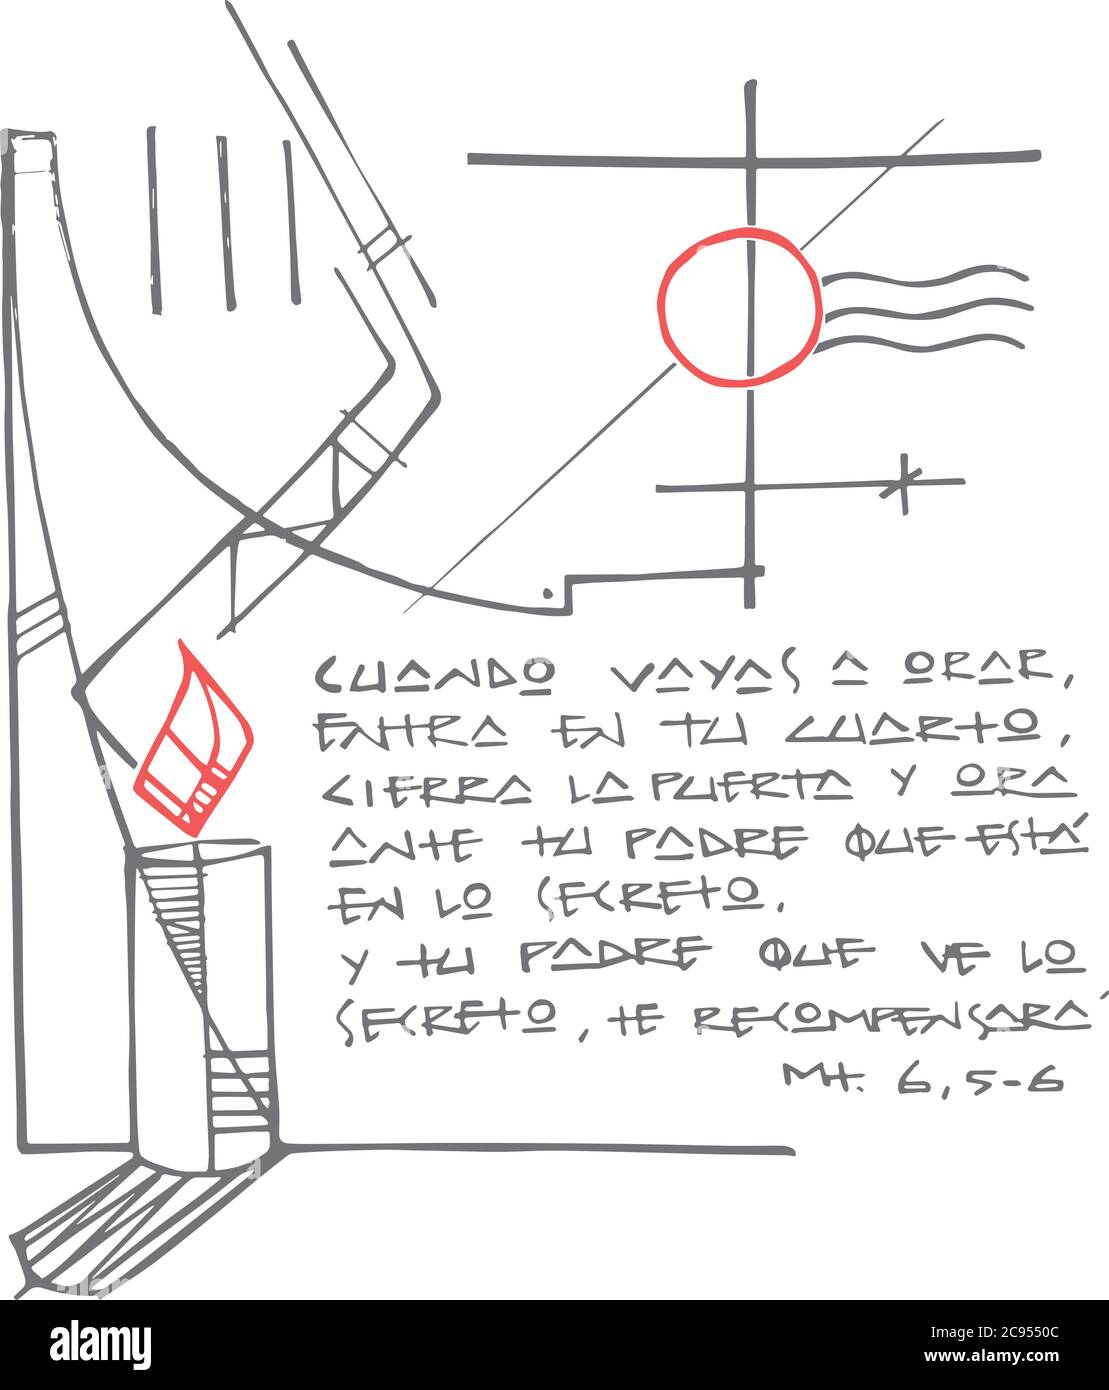 Illustrazione vettoriale disegnata a mano o disegno di alcuni simboli cristiani e una frase biblica in spagnolo che significa: Quando volete pregare, andate al vostro roo Illustrazione Vettoriale